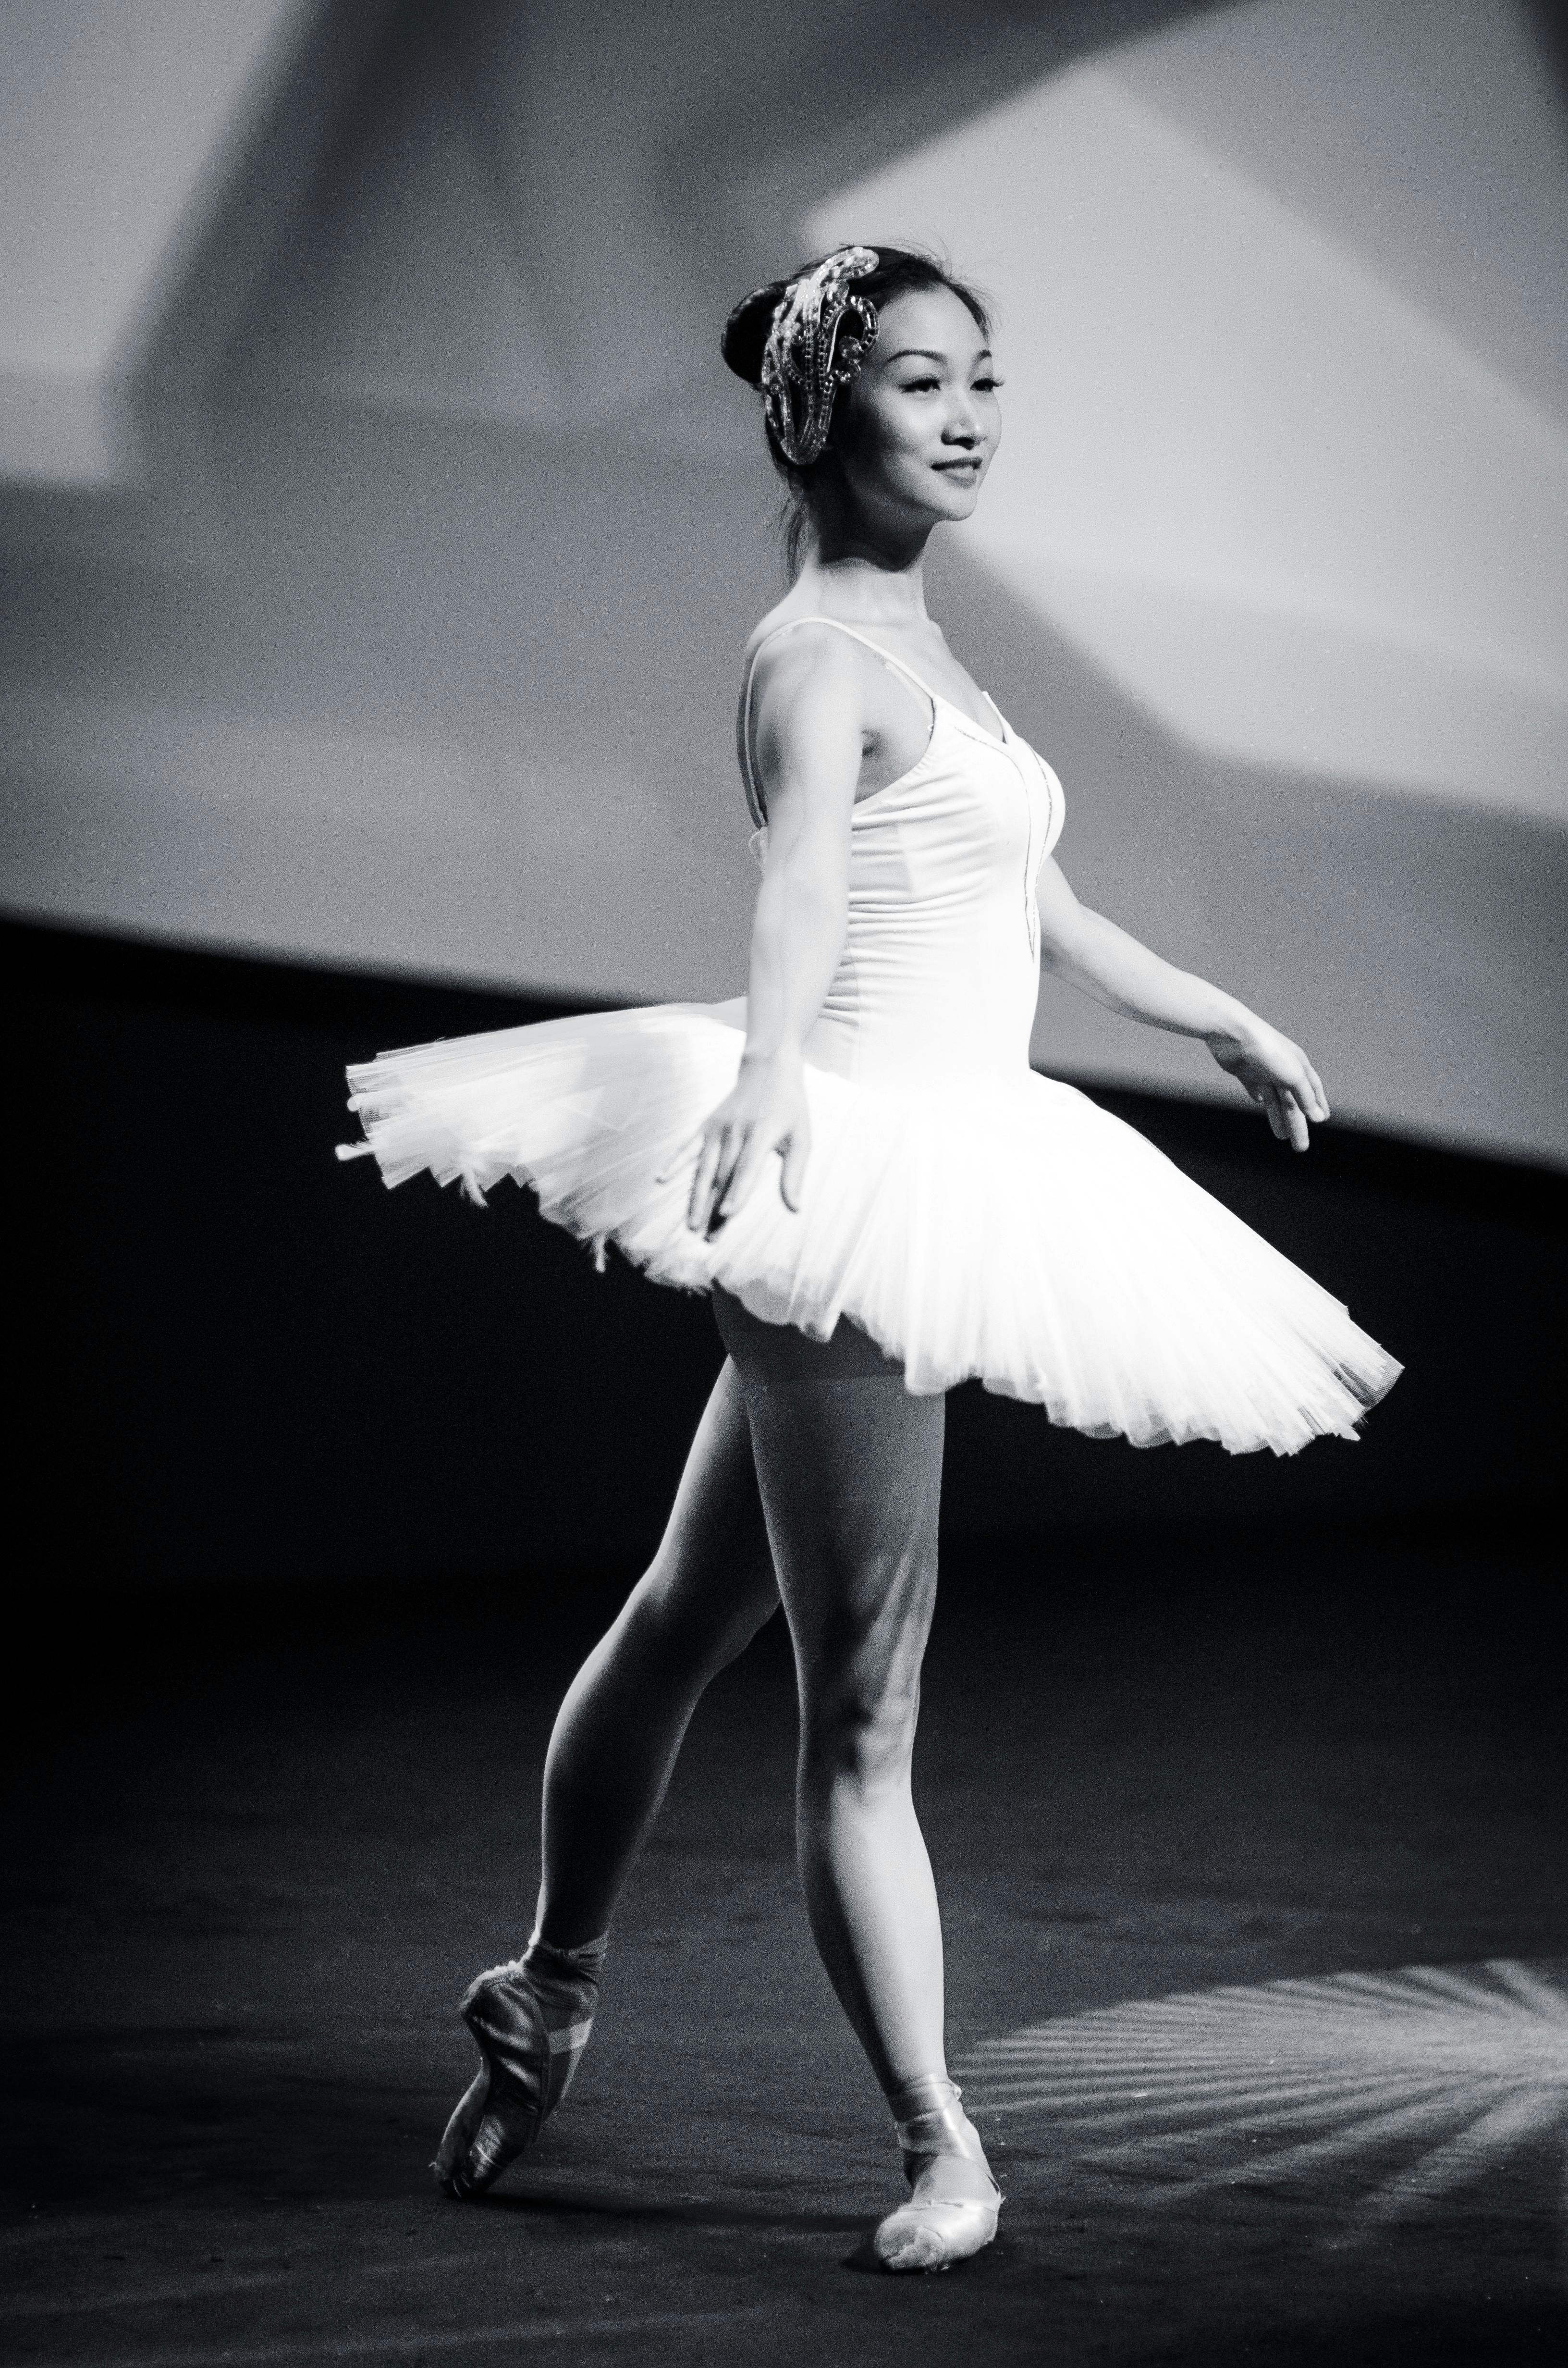 https://images.pexels.com/photos/39572/ballet-dance-dancer-ballerina-39572.jpeg